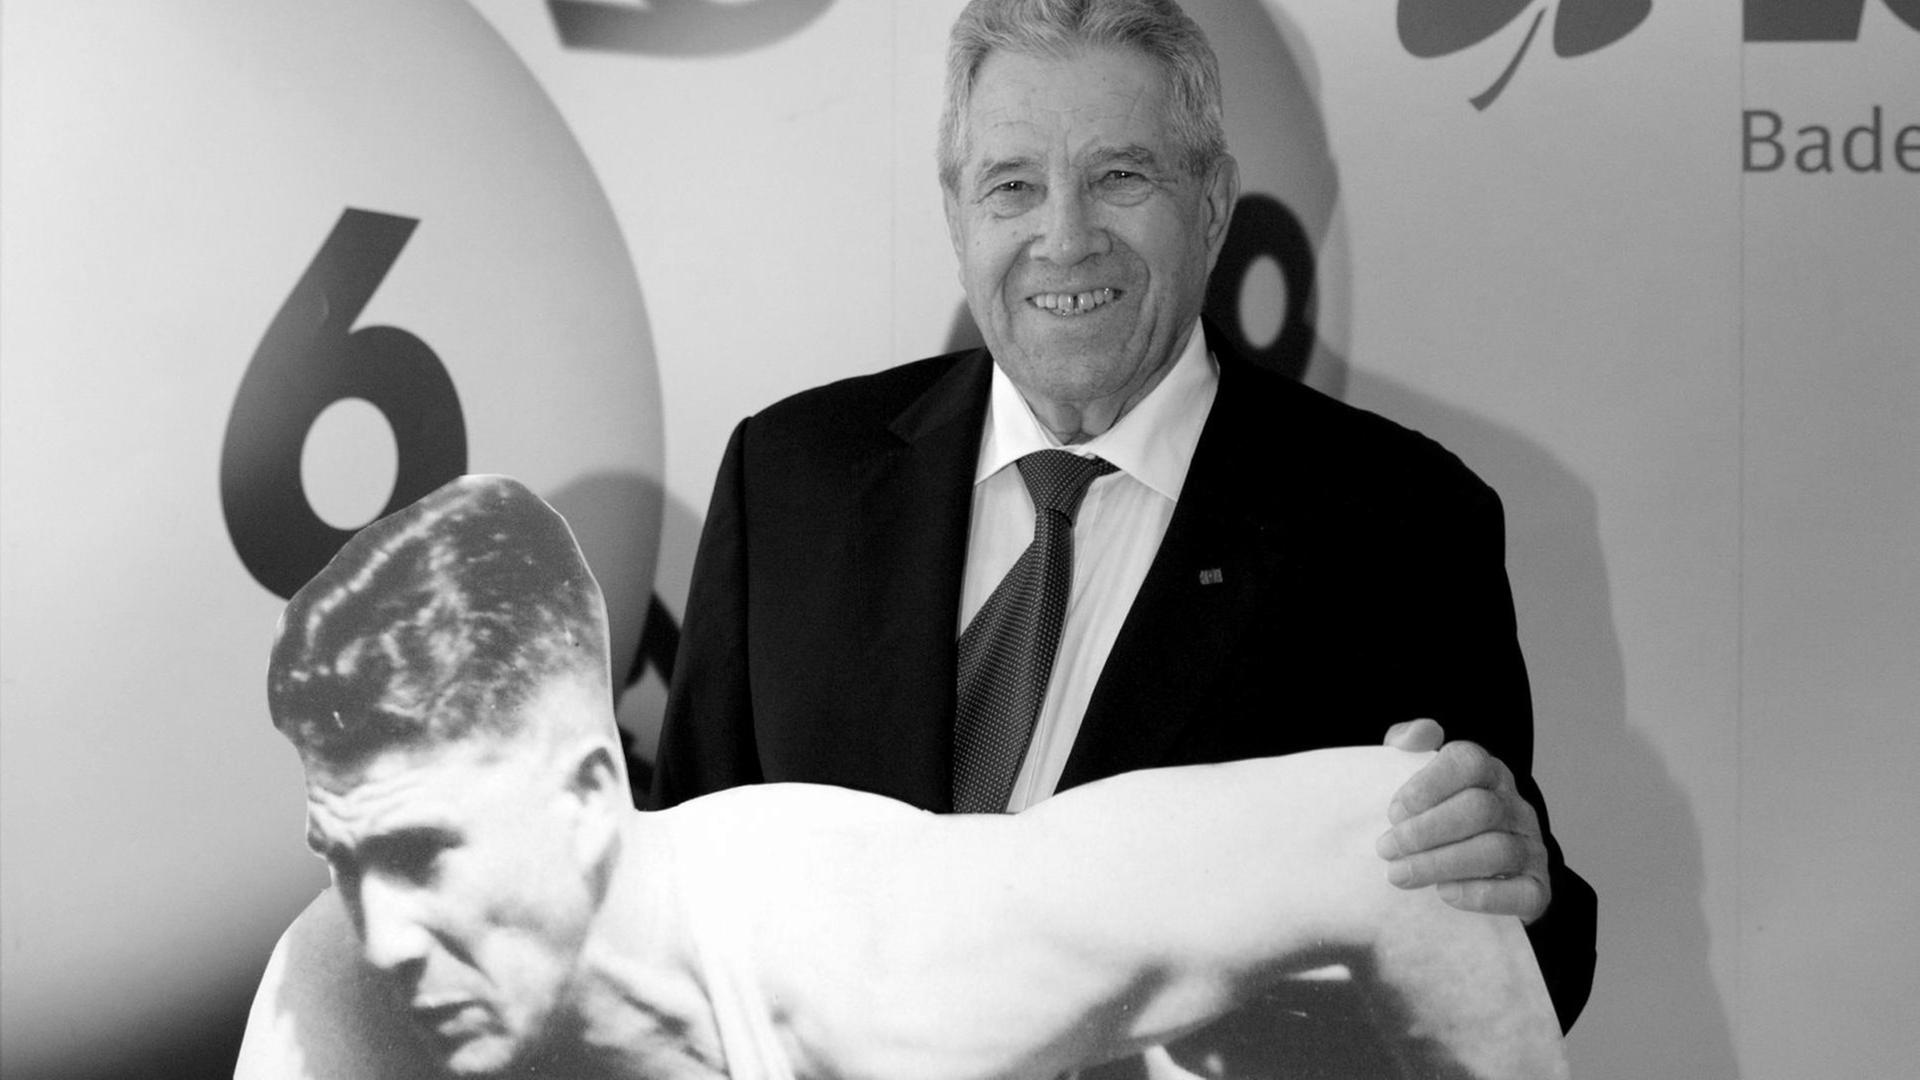 Der ehemalige Sprinter Heinz Fütterer lächelt am Mittwoch (12.10.2011) bei einem Empfang in Stuttgart hinter eine Pappfigur, die ihn am 28.08.1954 bei den Europa-Meisterschaften in Bern zeigt.